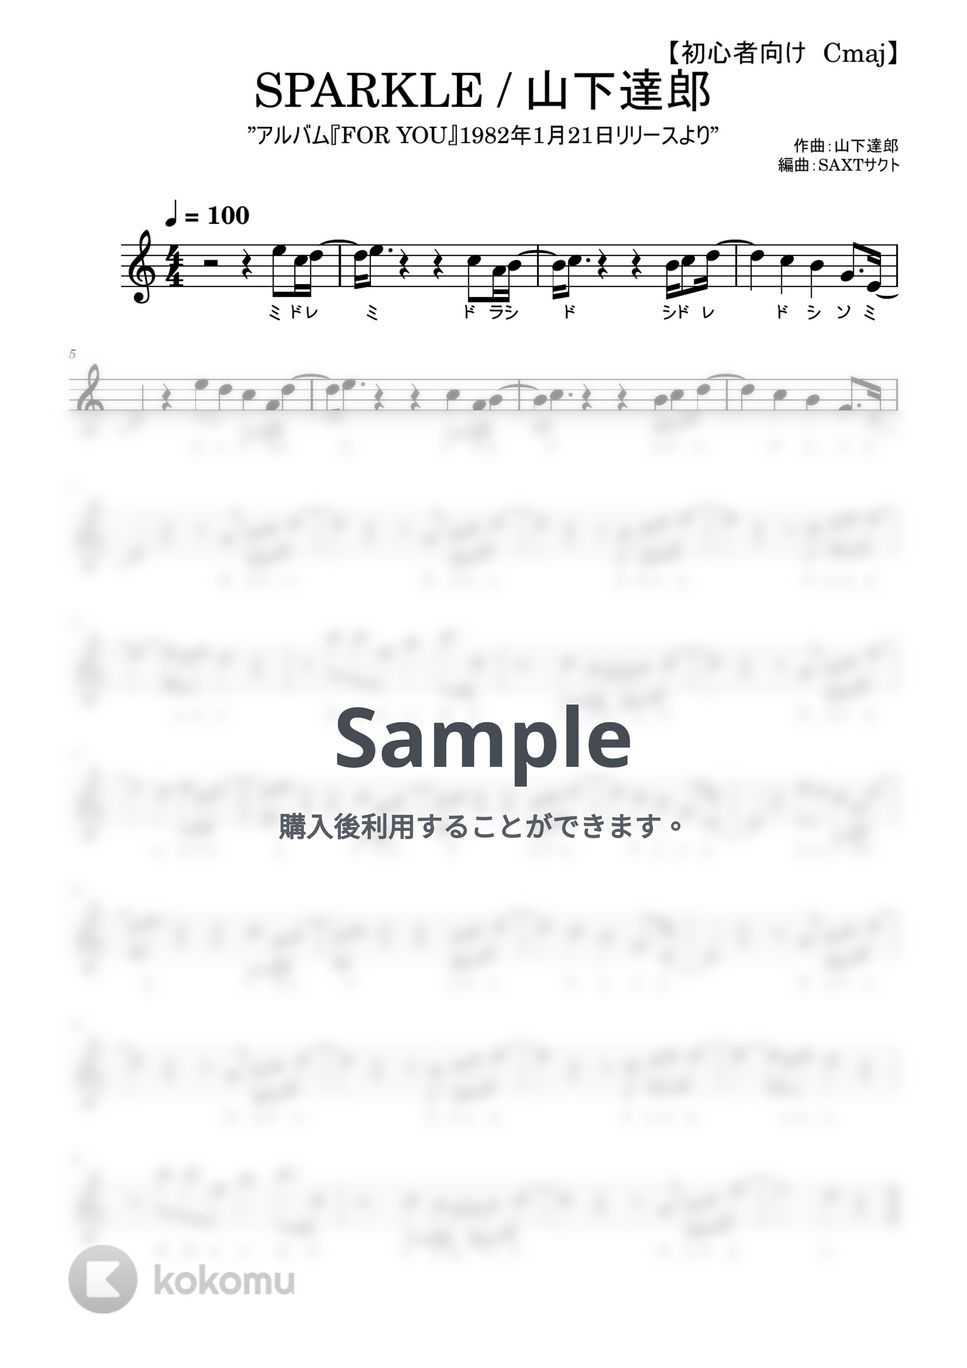 山下達郎 - SPARKLE (めちゃラク譜) by SAXT